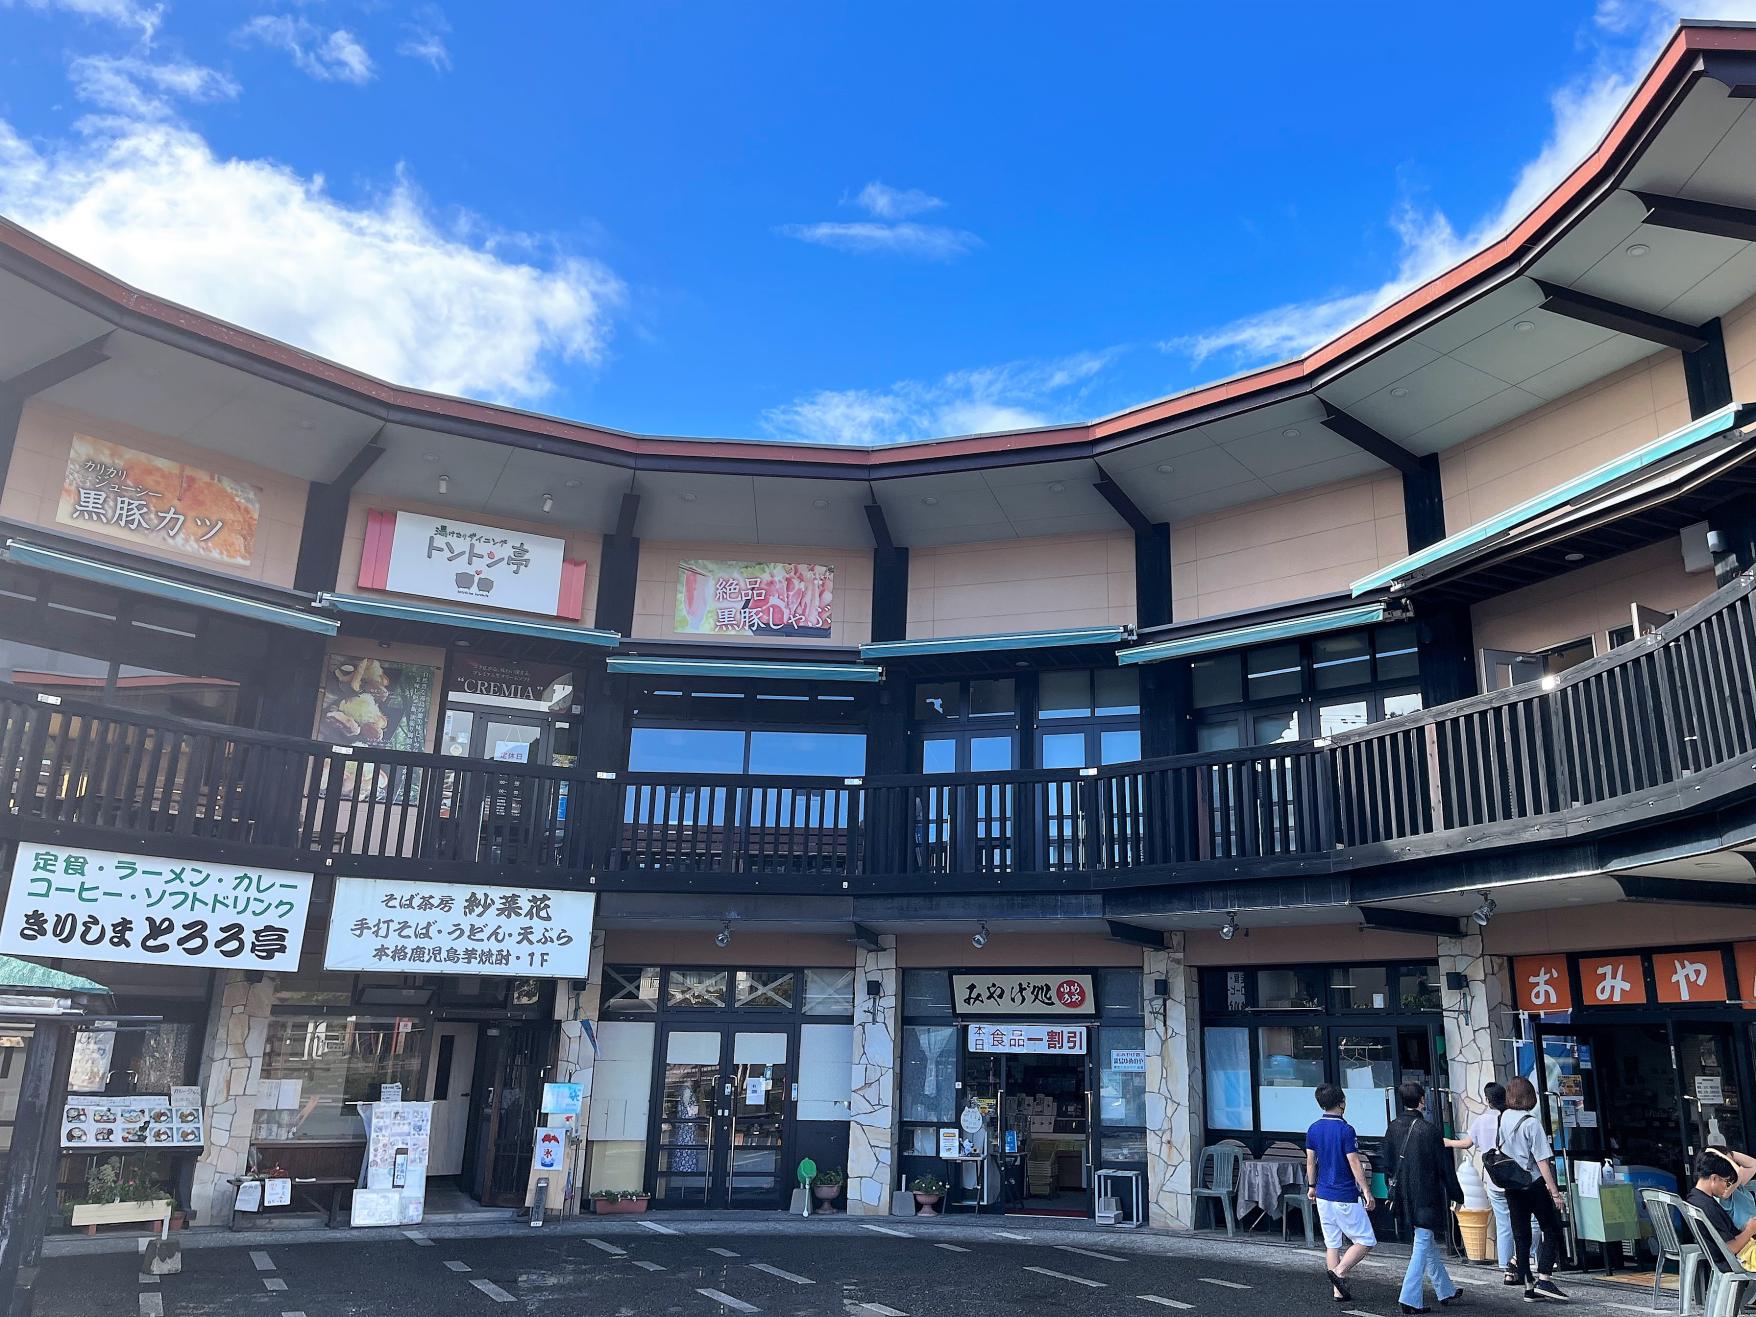  【Day 1】Kirishima Onsen Market 